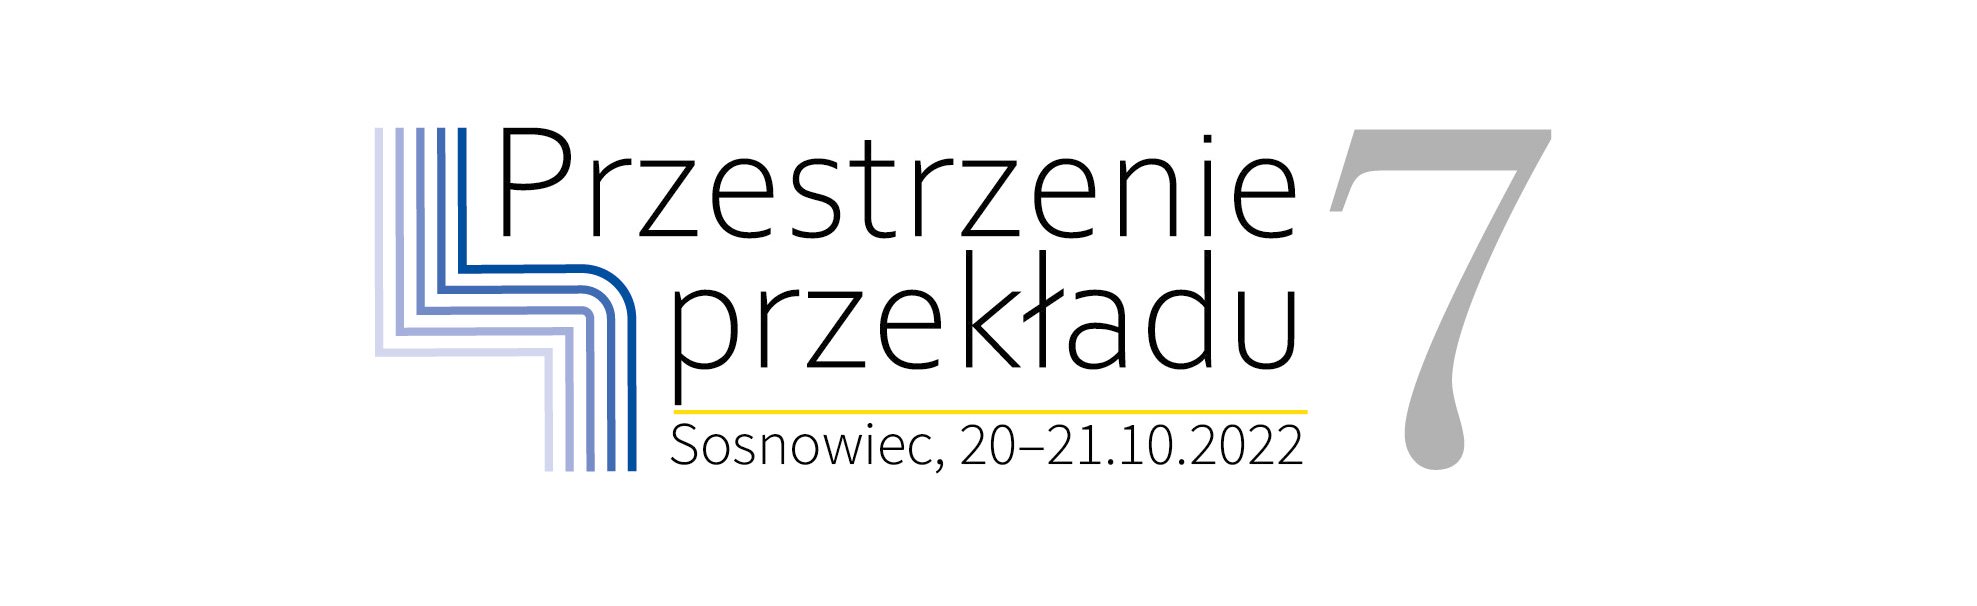 Przestrzenie przekładu 7, Sosnowiec 20-21 października 2022